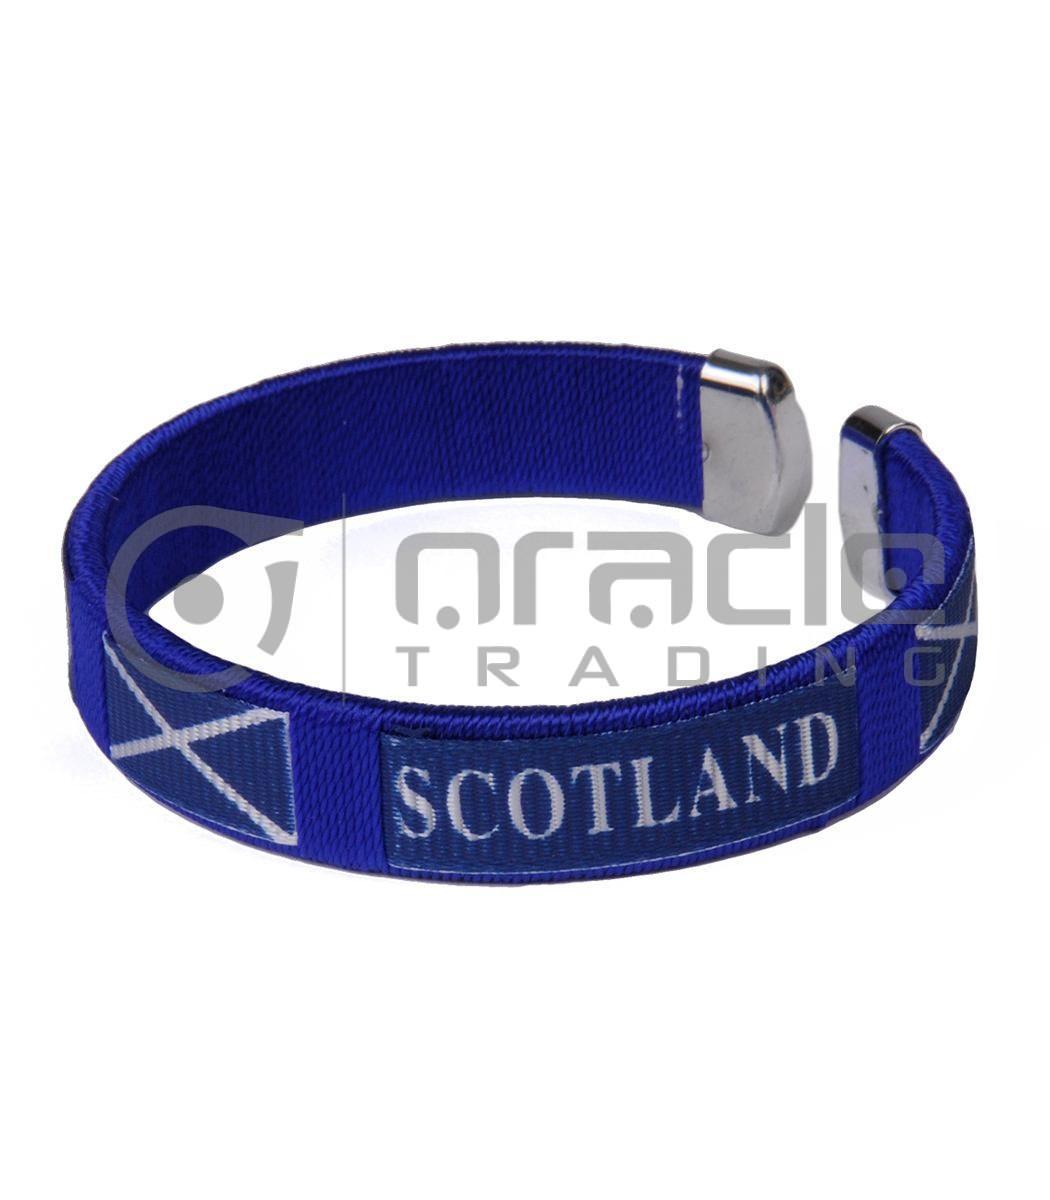 Scotland C Bracelets 12-Pack (St. Andrew's Cross)